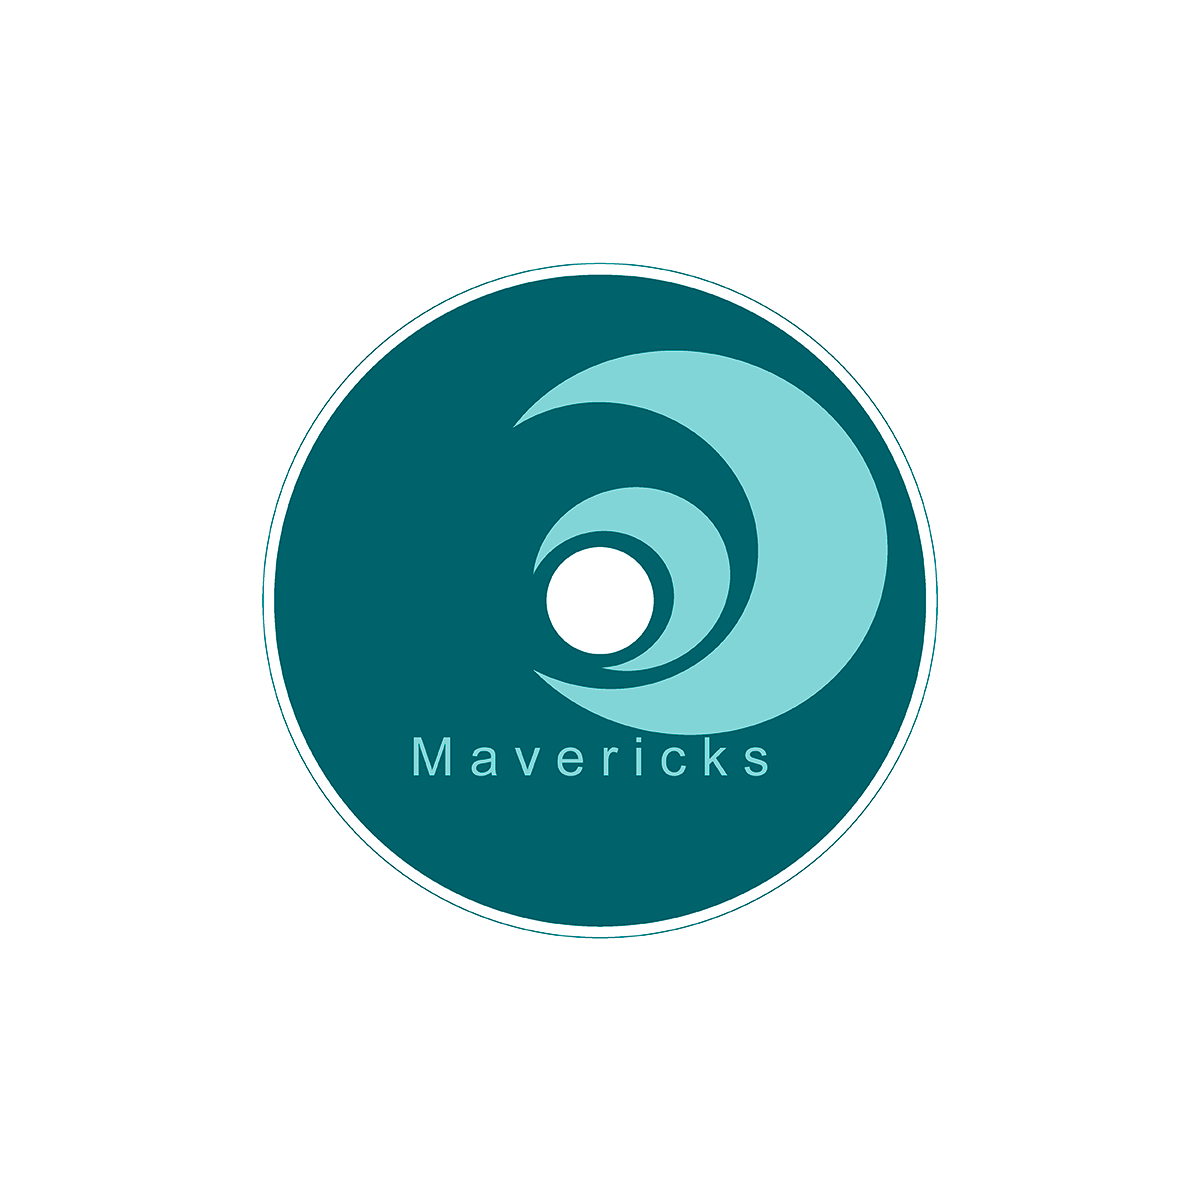 Mavericks Hotel & Spa Packaging CD